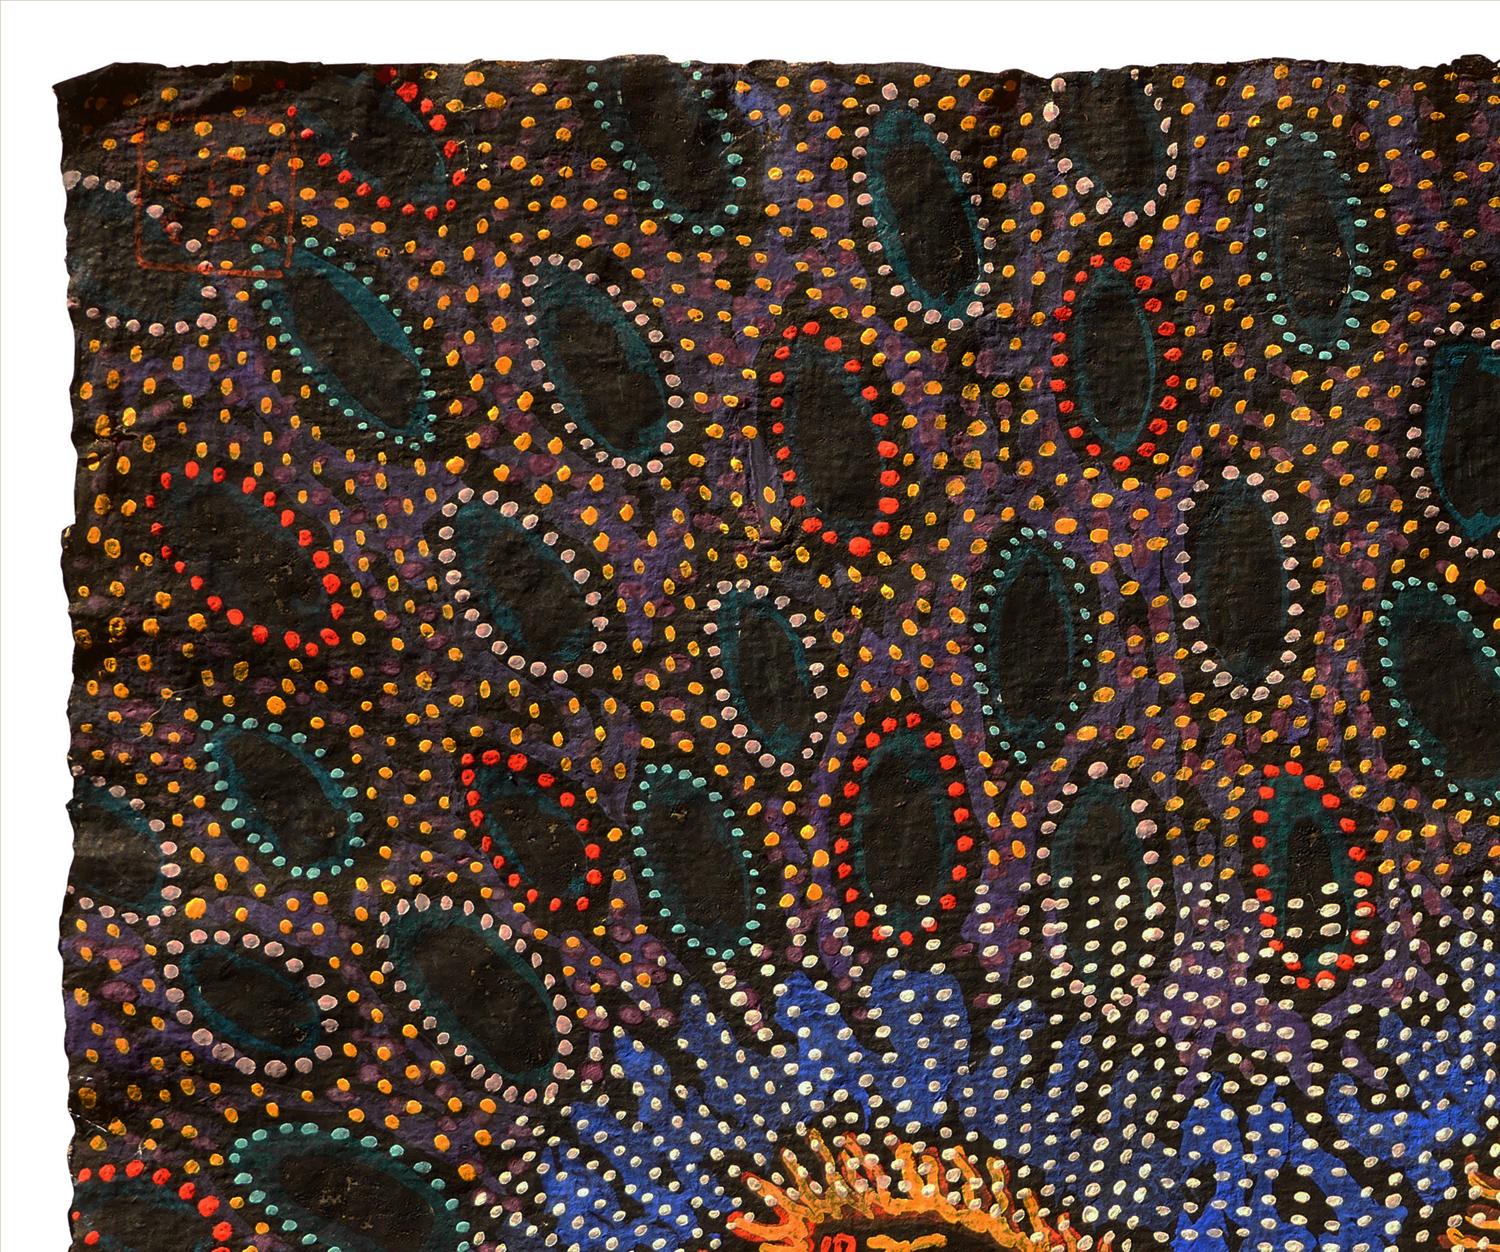 Modernes abstraktes Gouache-Gemälde in neutralen Farbtönen der in Texas lebenden Künstlerin Dee Wolff. Das Werk zeigt hebräische Texte aus der Hekhalot-Literatur, umgeben von bunten abstrakten Punkten. Hekhalot-Text, abgeleitet von dem hebräischen